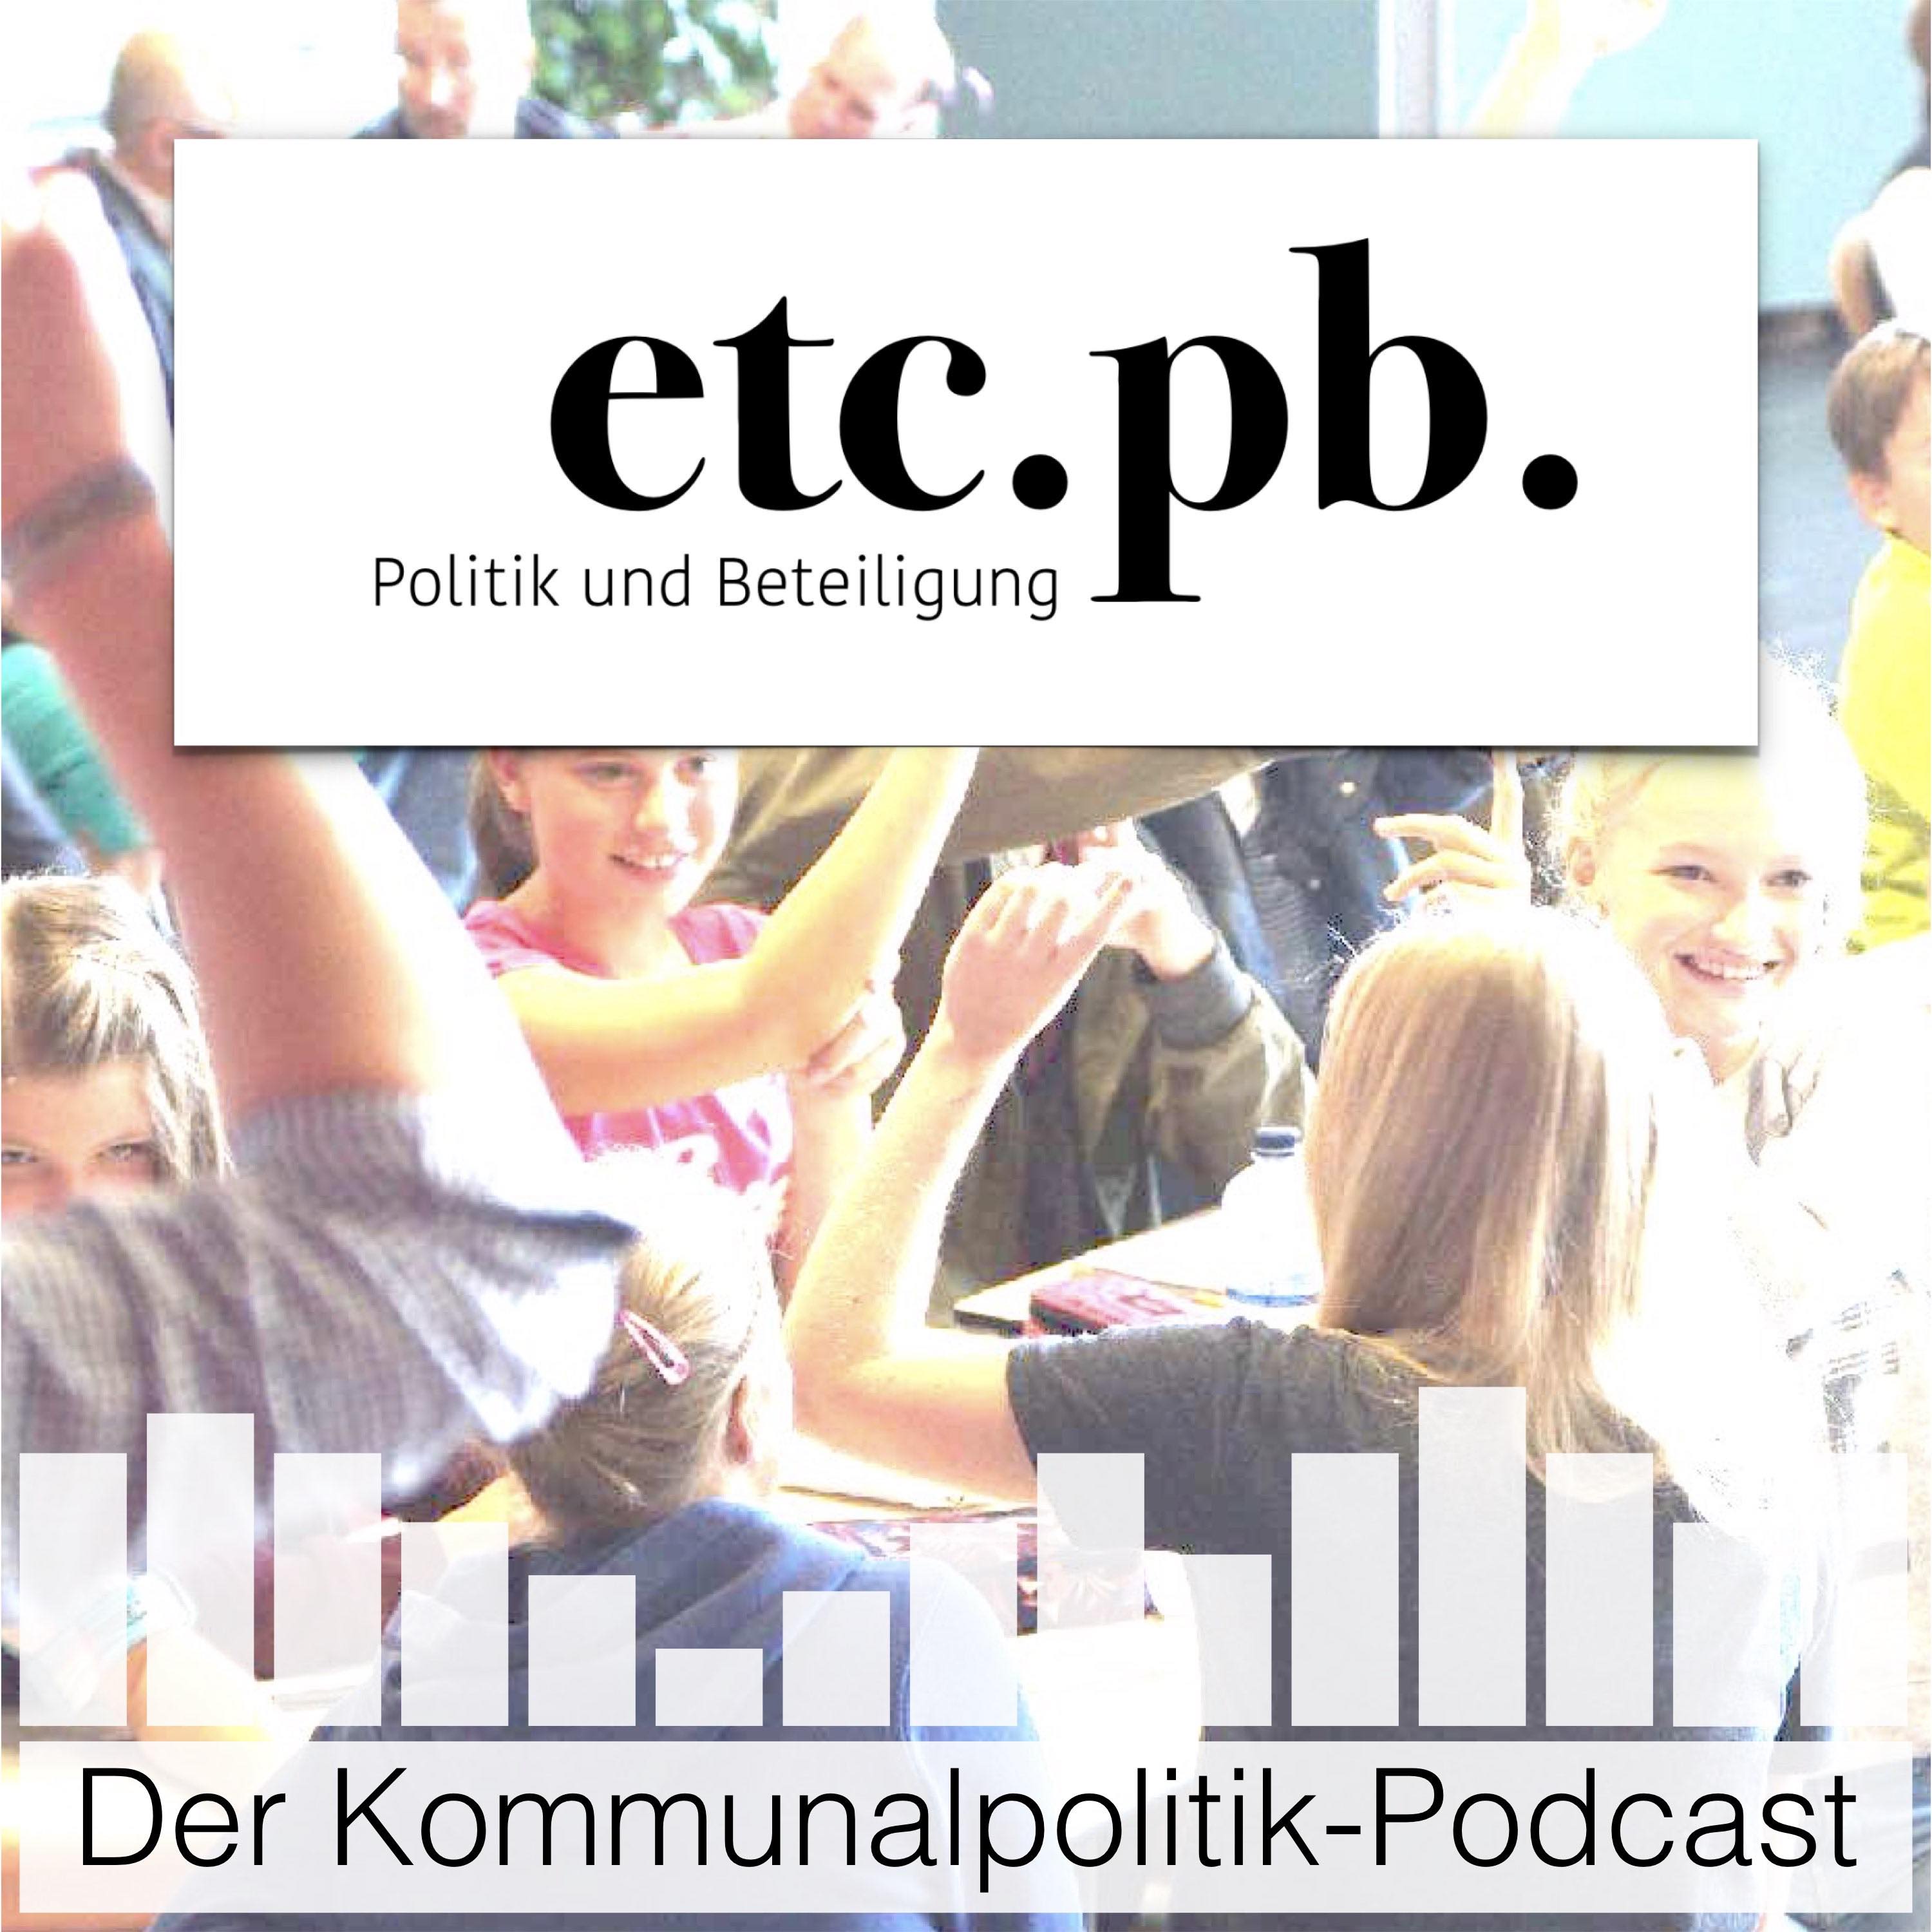 etcpb – Der Kommunalpolitik-Podcast über Politik und Beteiligung